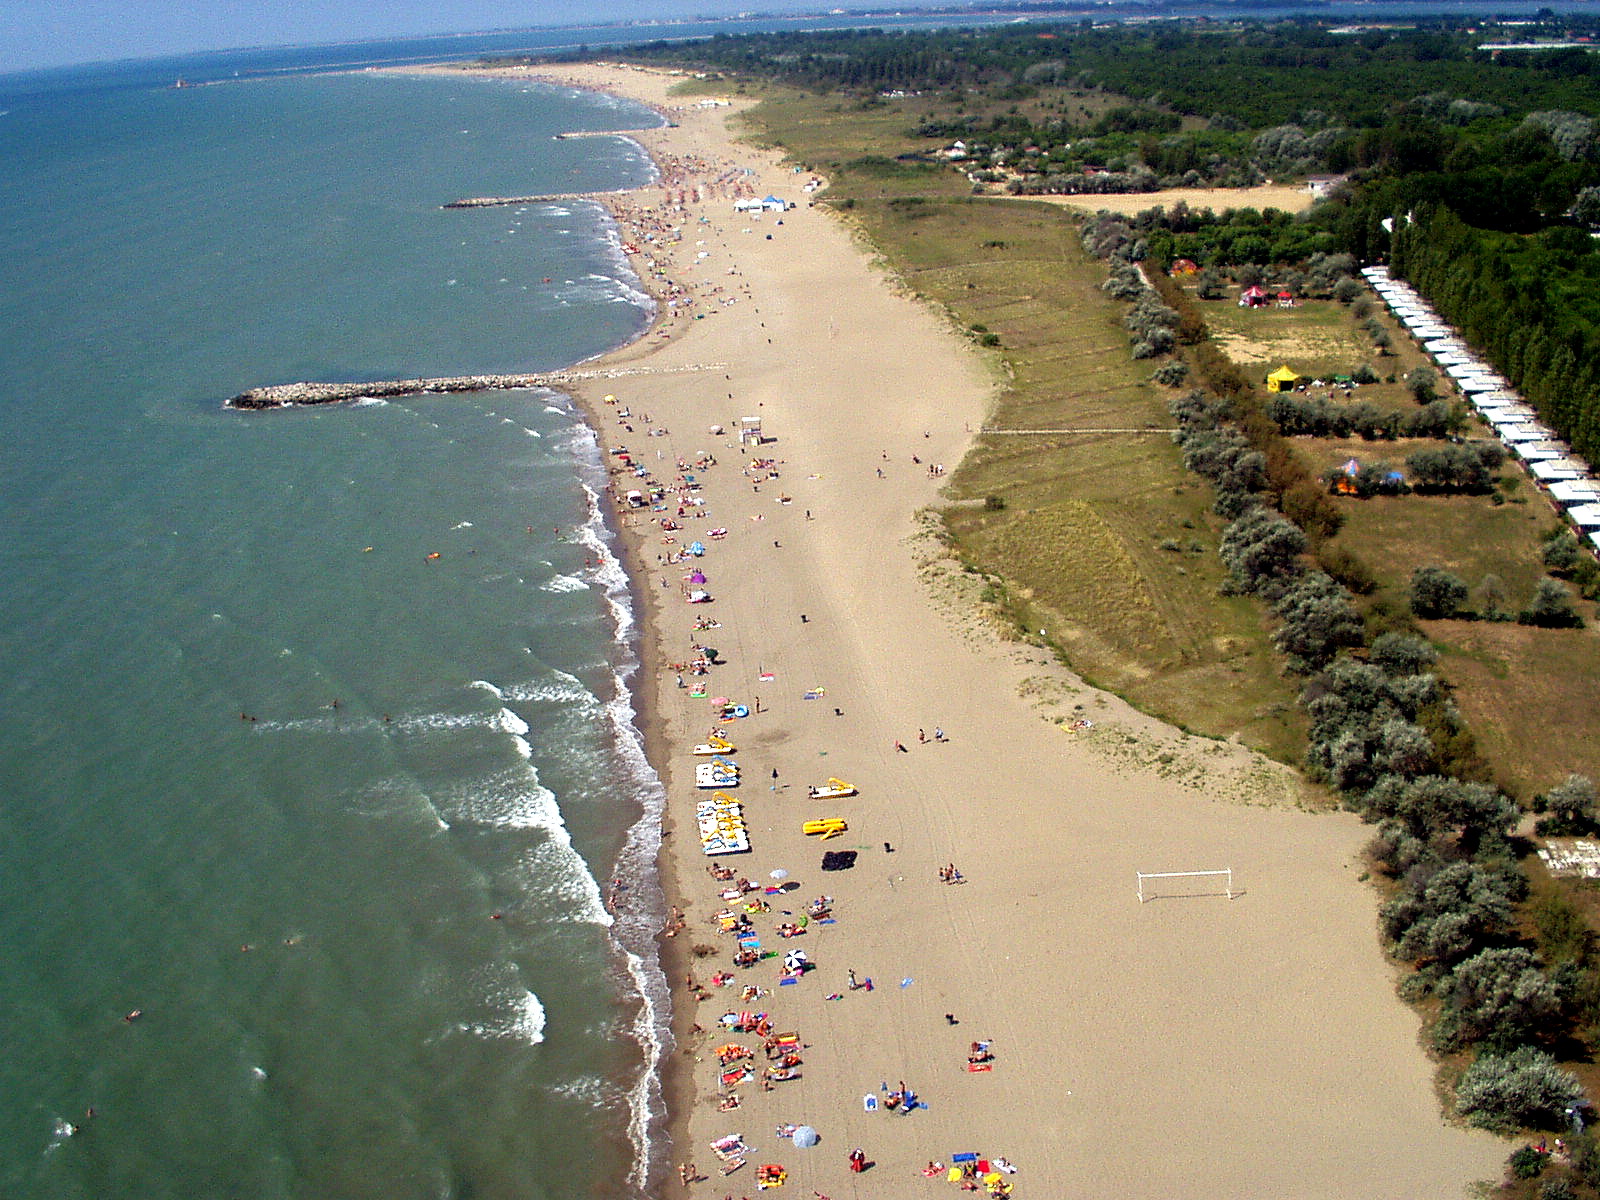 Zdjęcie Ca 'Savio beach z poziomem czystości wysoki